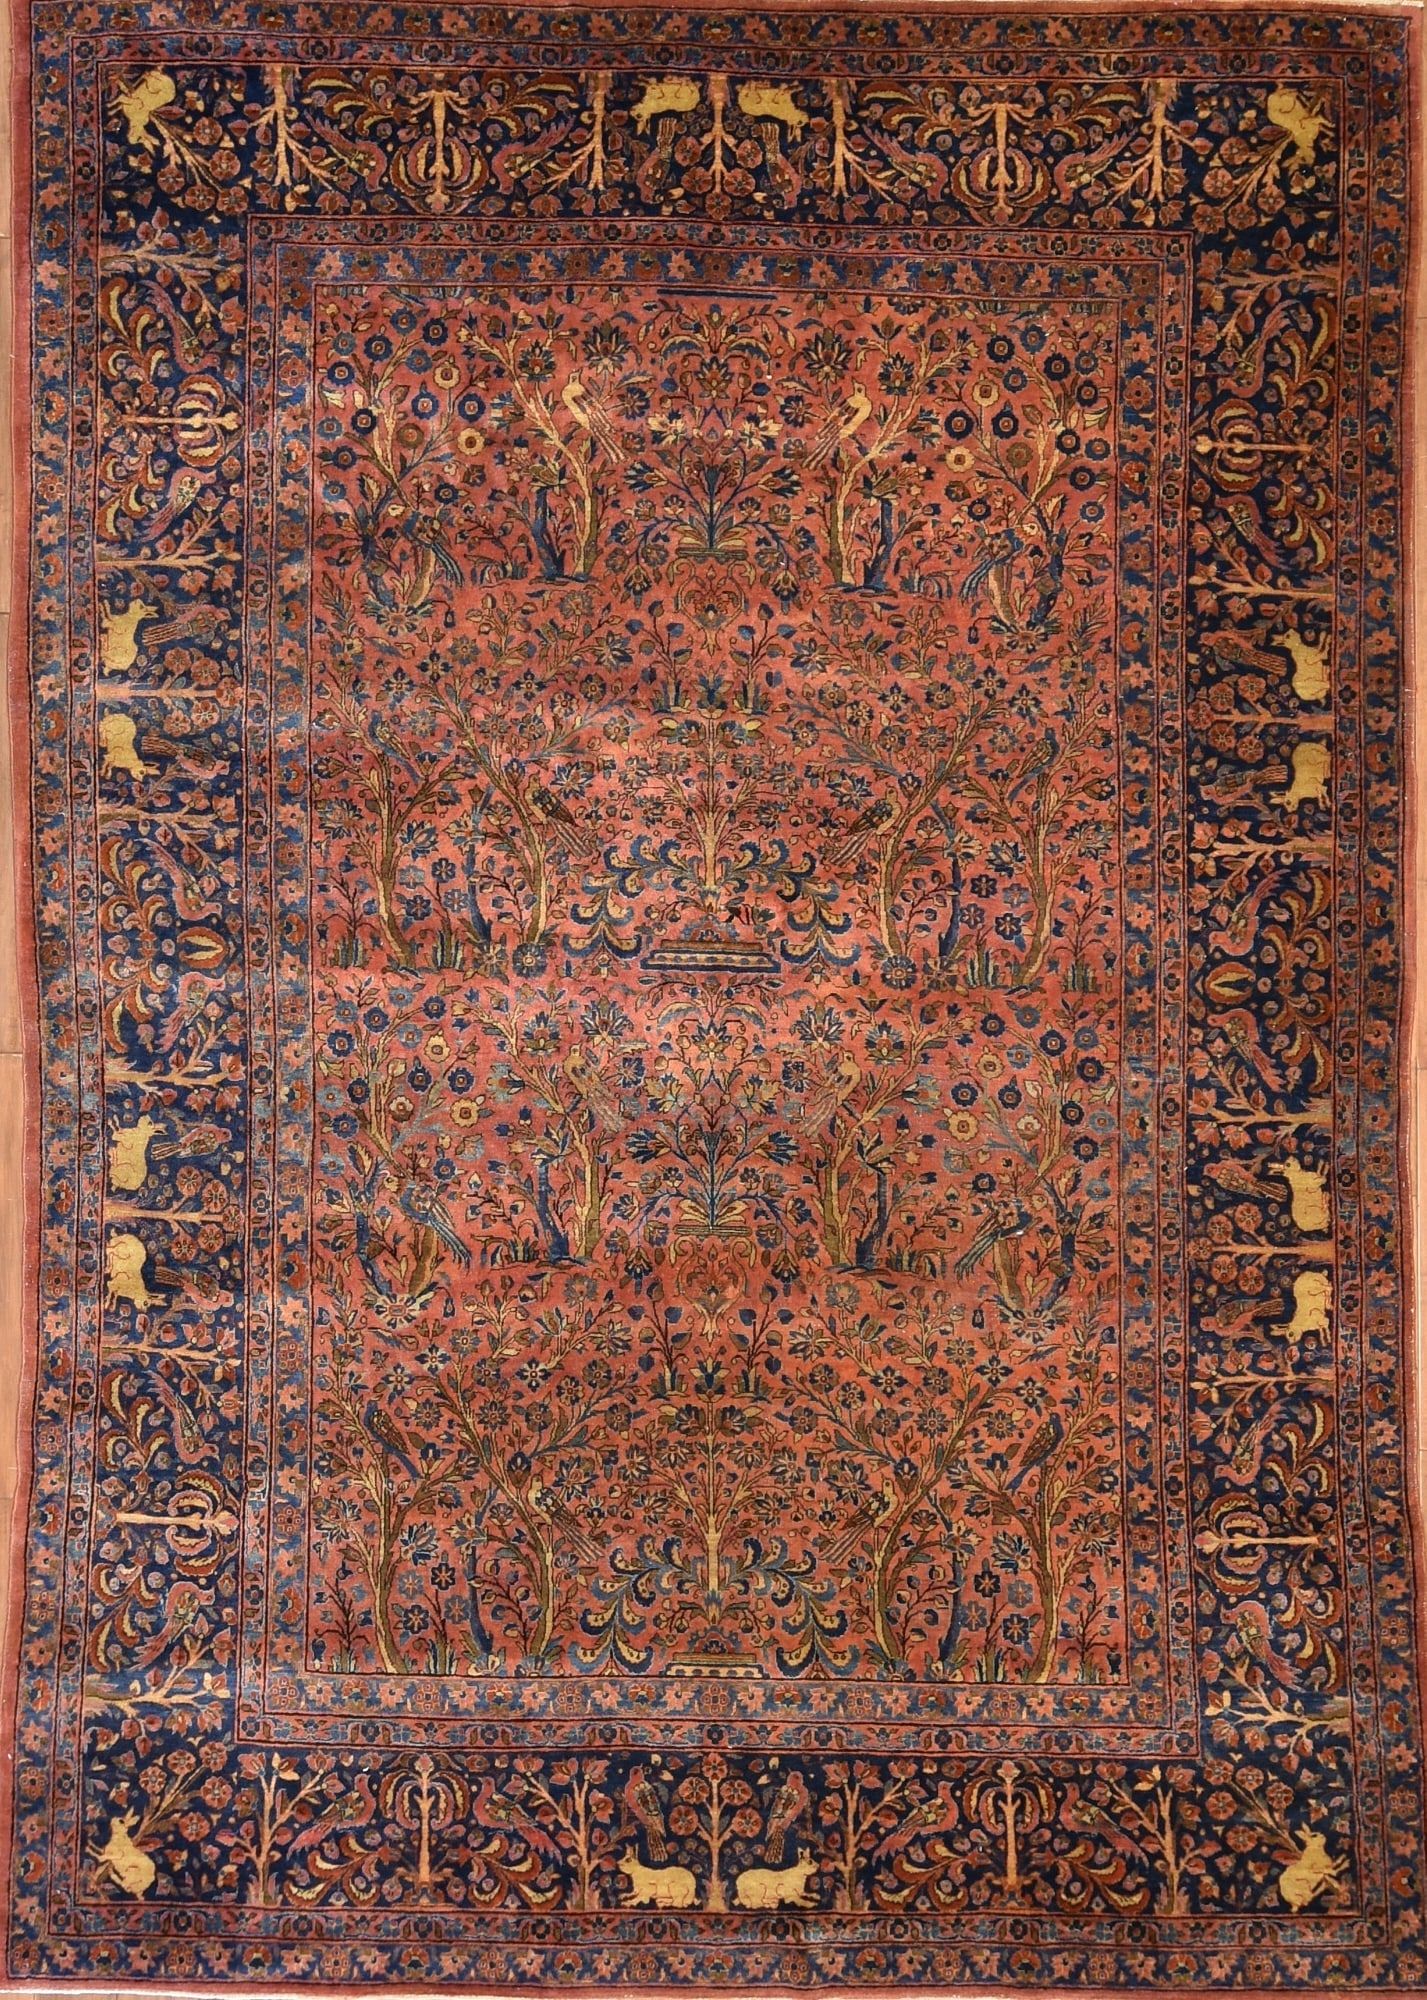 A KASHAN CARPETA Kashan carpetdimensions 2fb332c